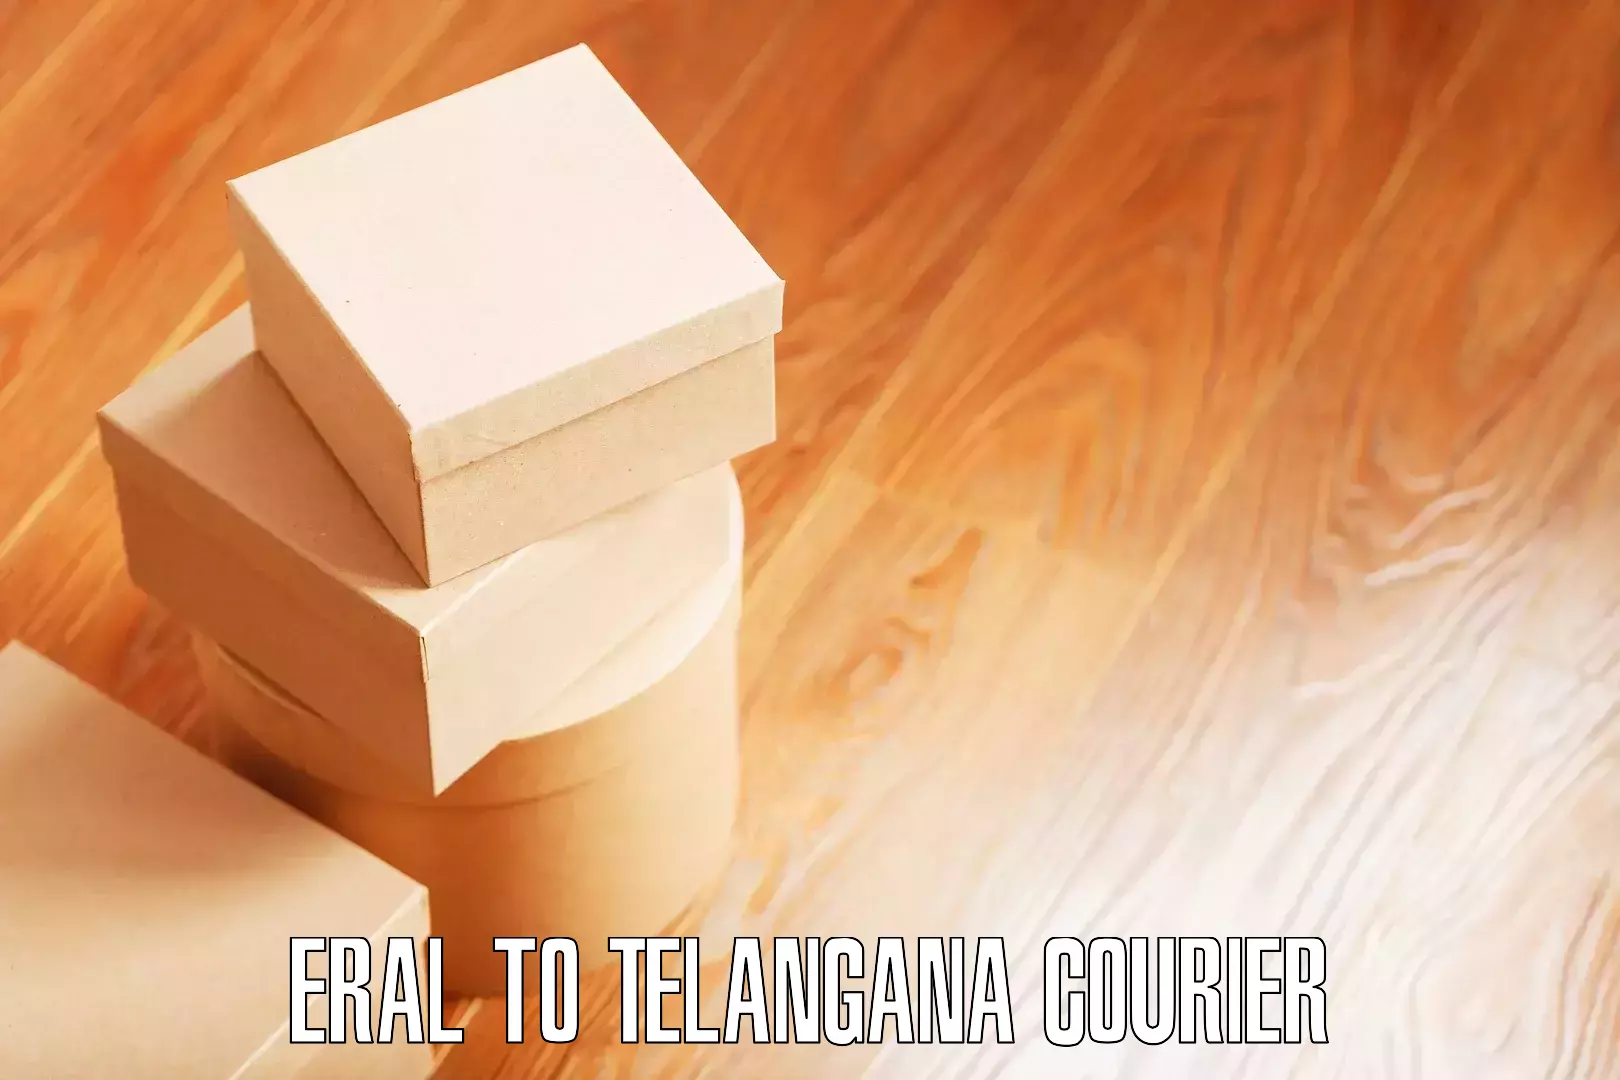 Efficient furniture transport Eral to Warangal